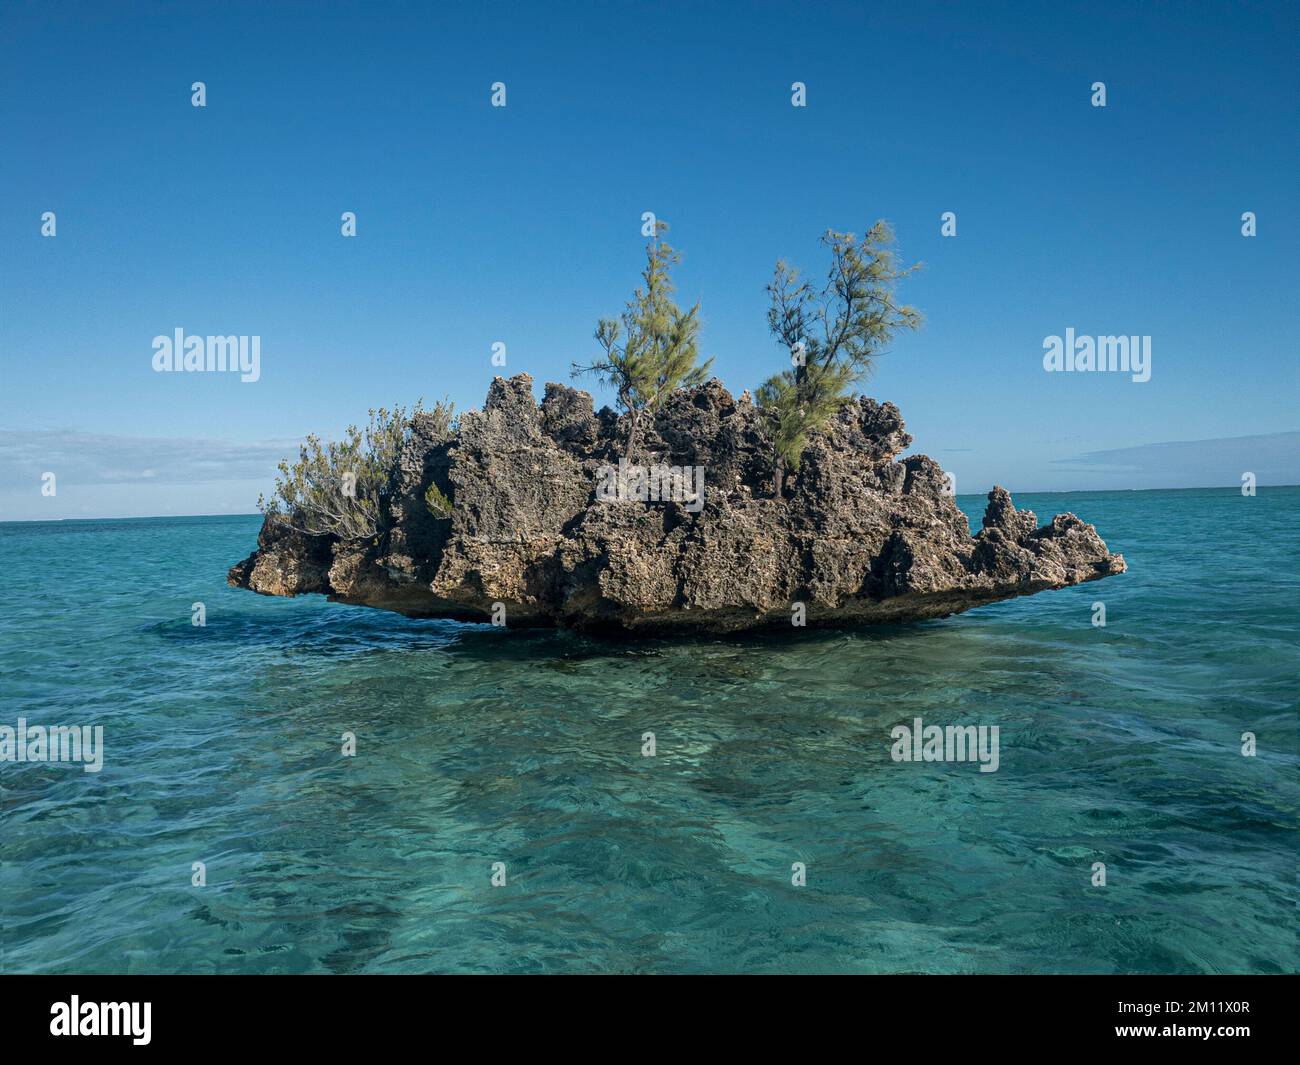 La roccia di cristallo è una roccia isolata nell'oceano della costa dell'isola di Mauritius Foto Stock